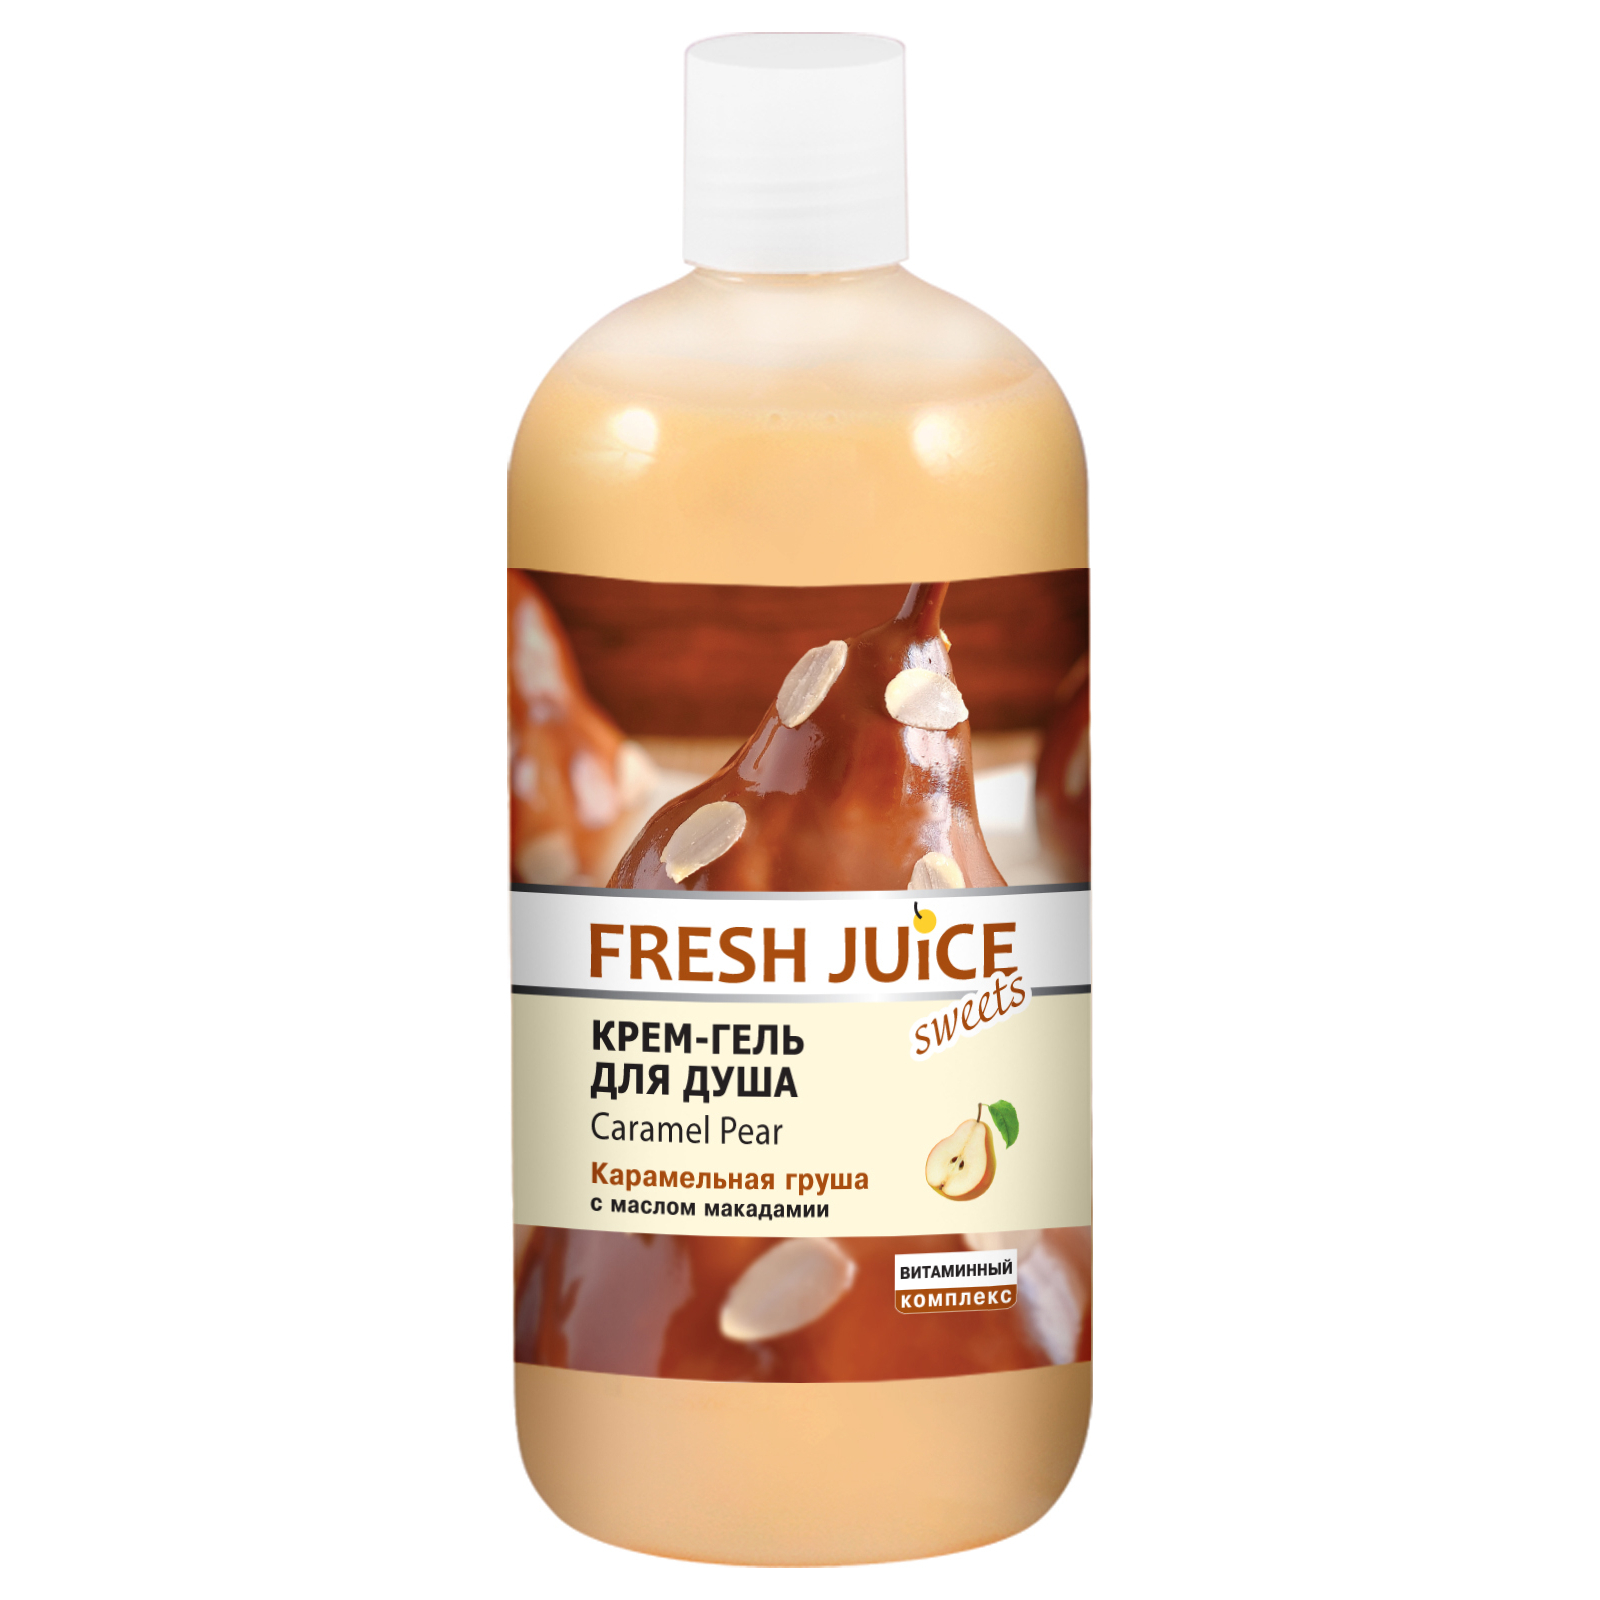 Гель для душа Fresh Juice Caramel Pear 500 мл (4823015937538)